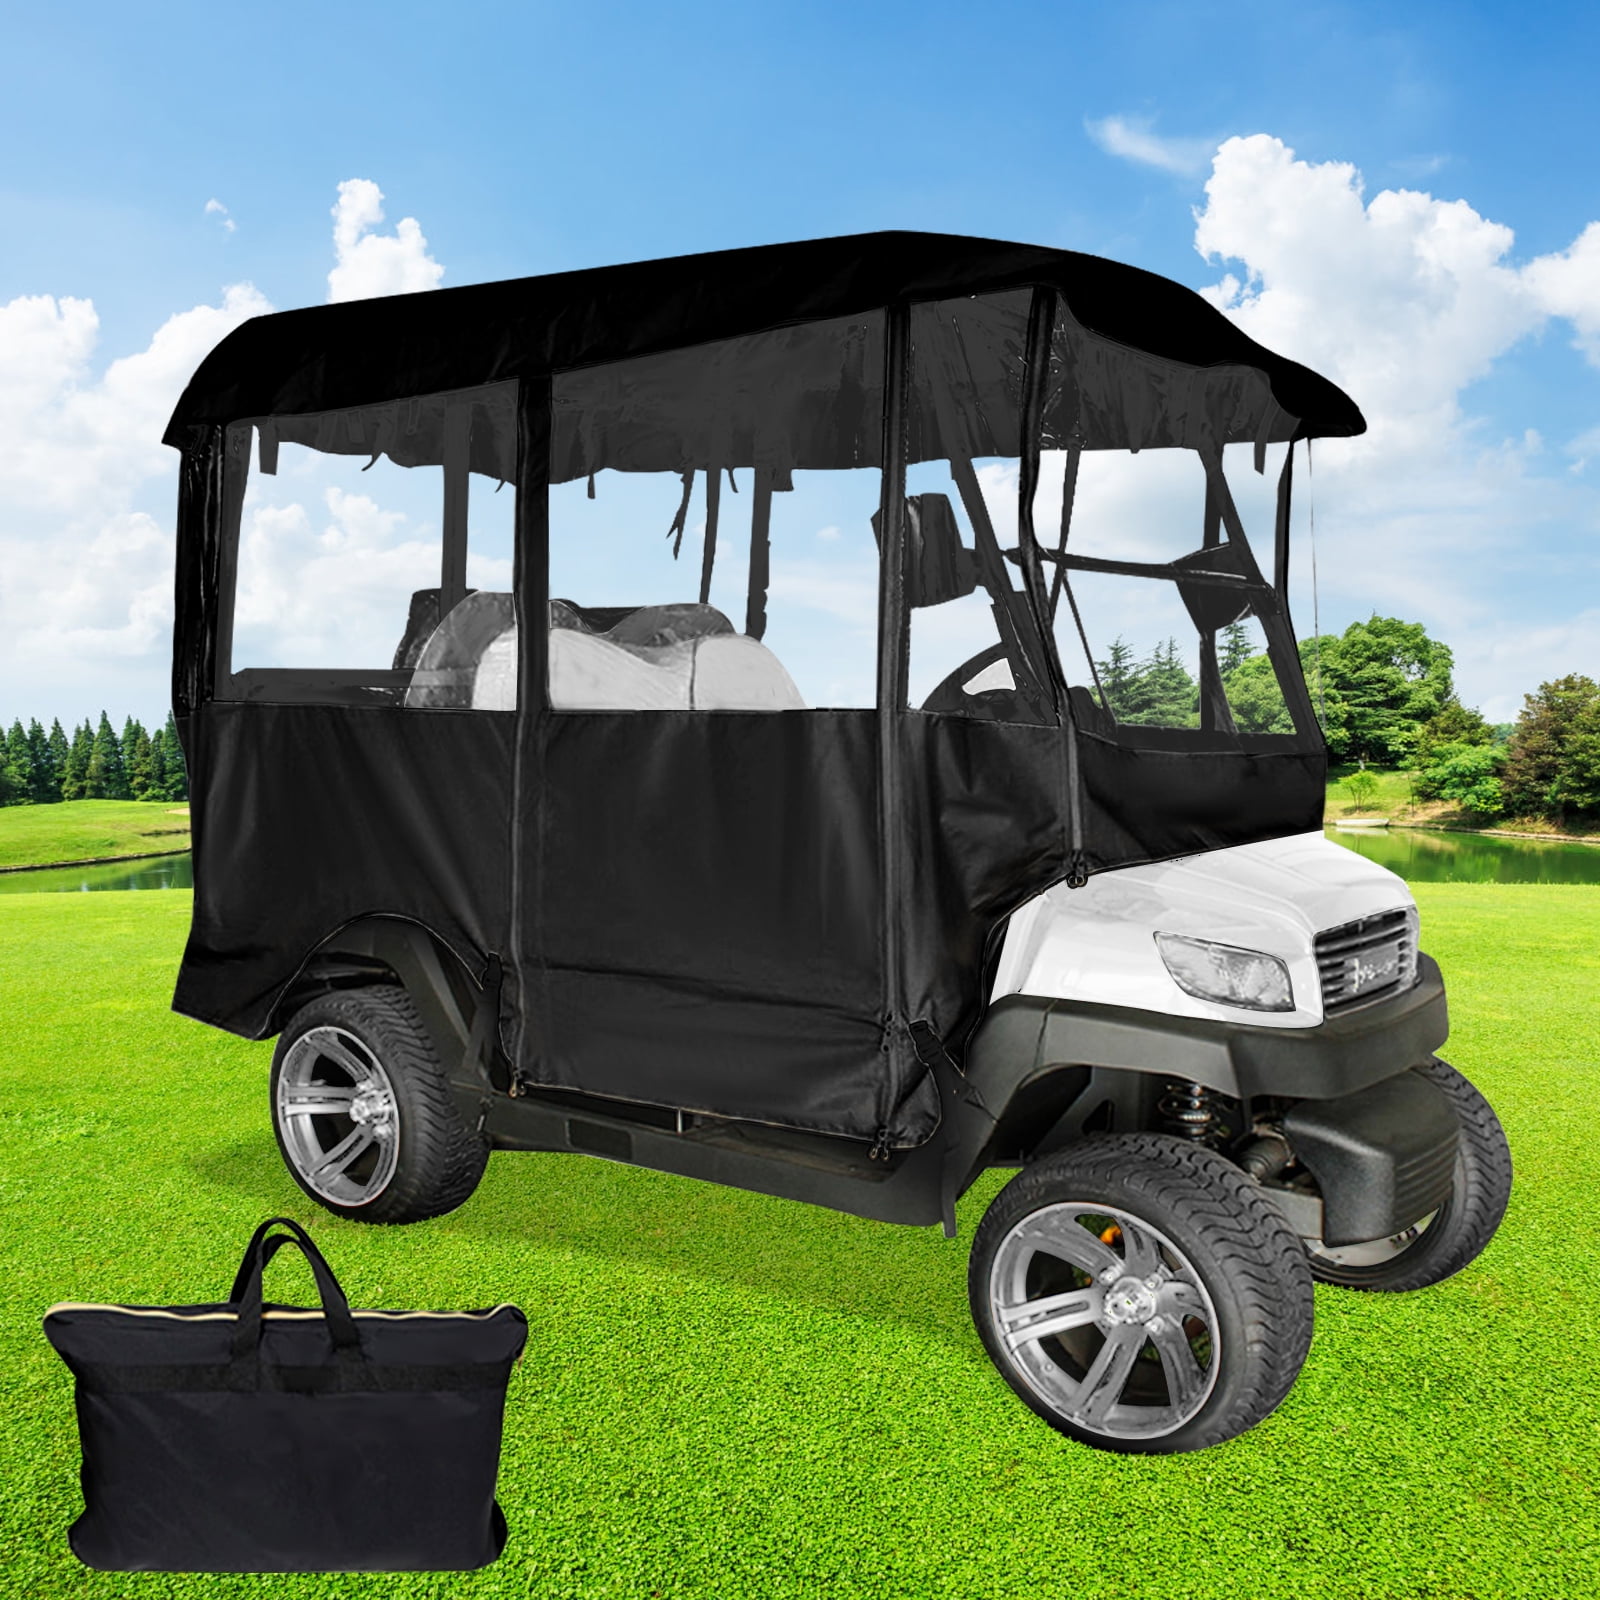 VEVORbrand Golf Cart Enclosure 86.6"L, 4 Person Golf Cart Cover, 300D  Waterproof Driving Enclosure Fits for EZ Go Club Car Yamaha Golf Carts -  Walmart.com